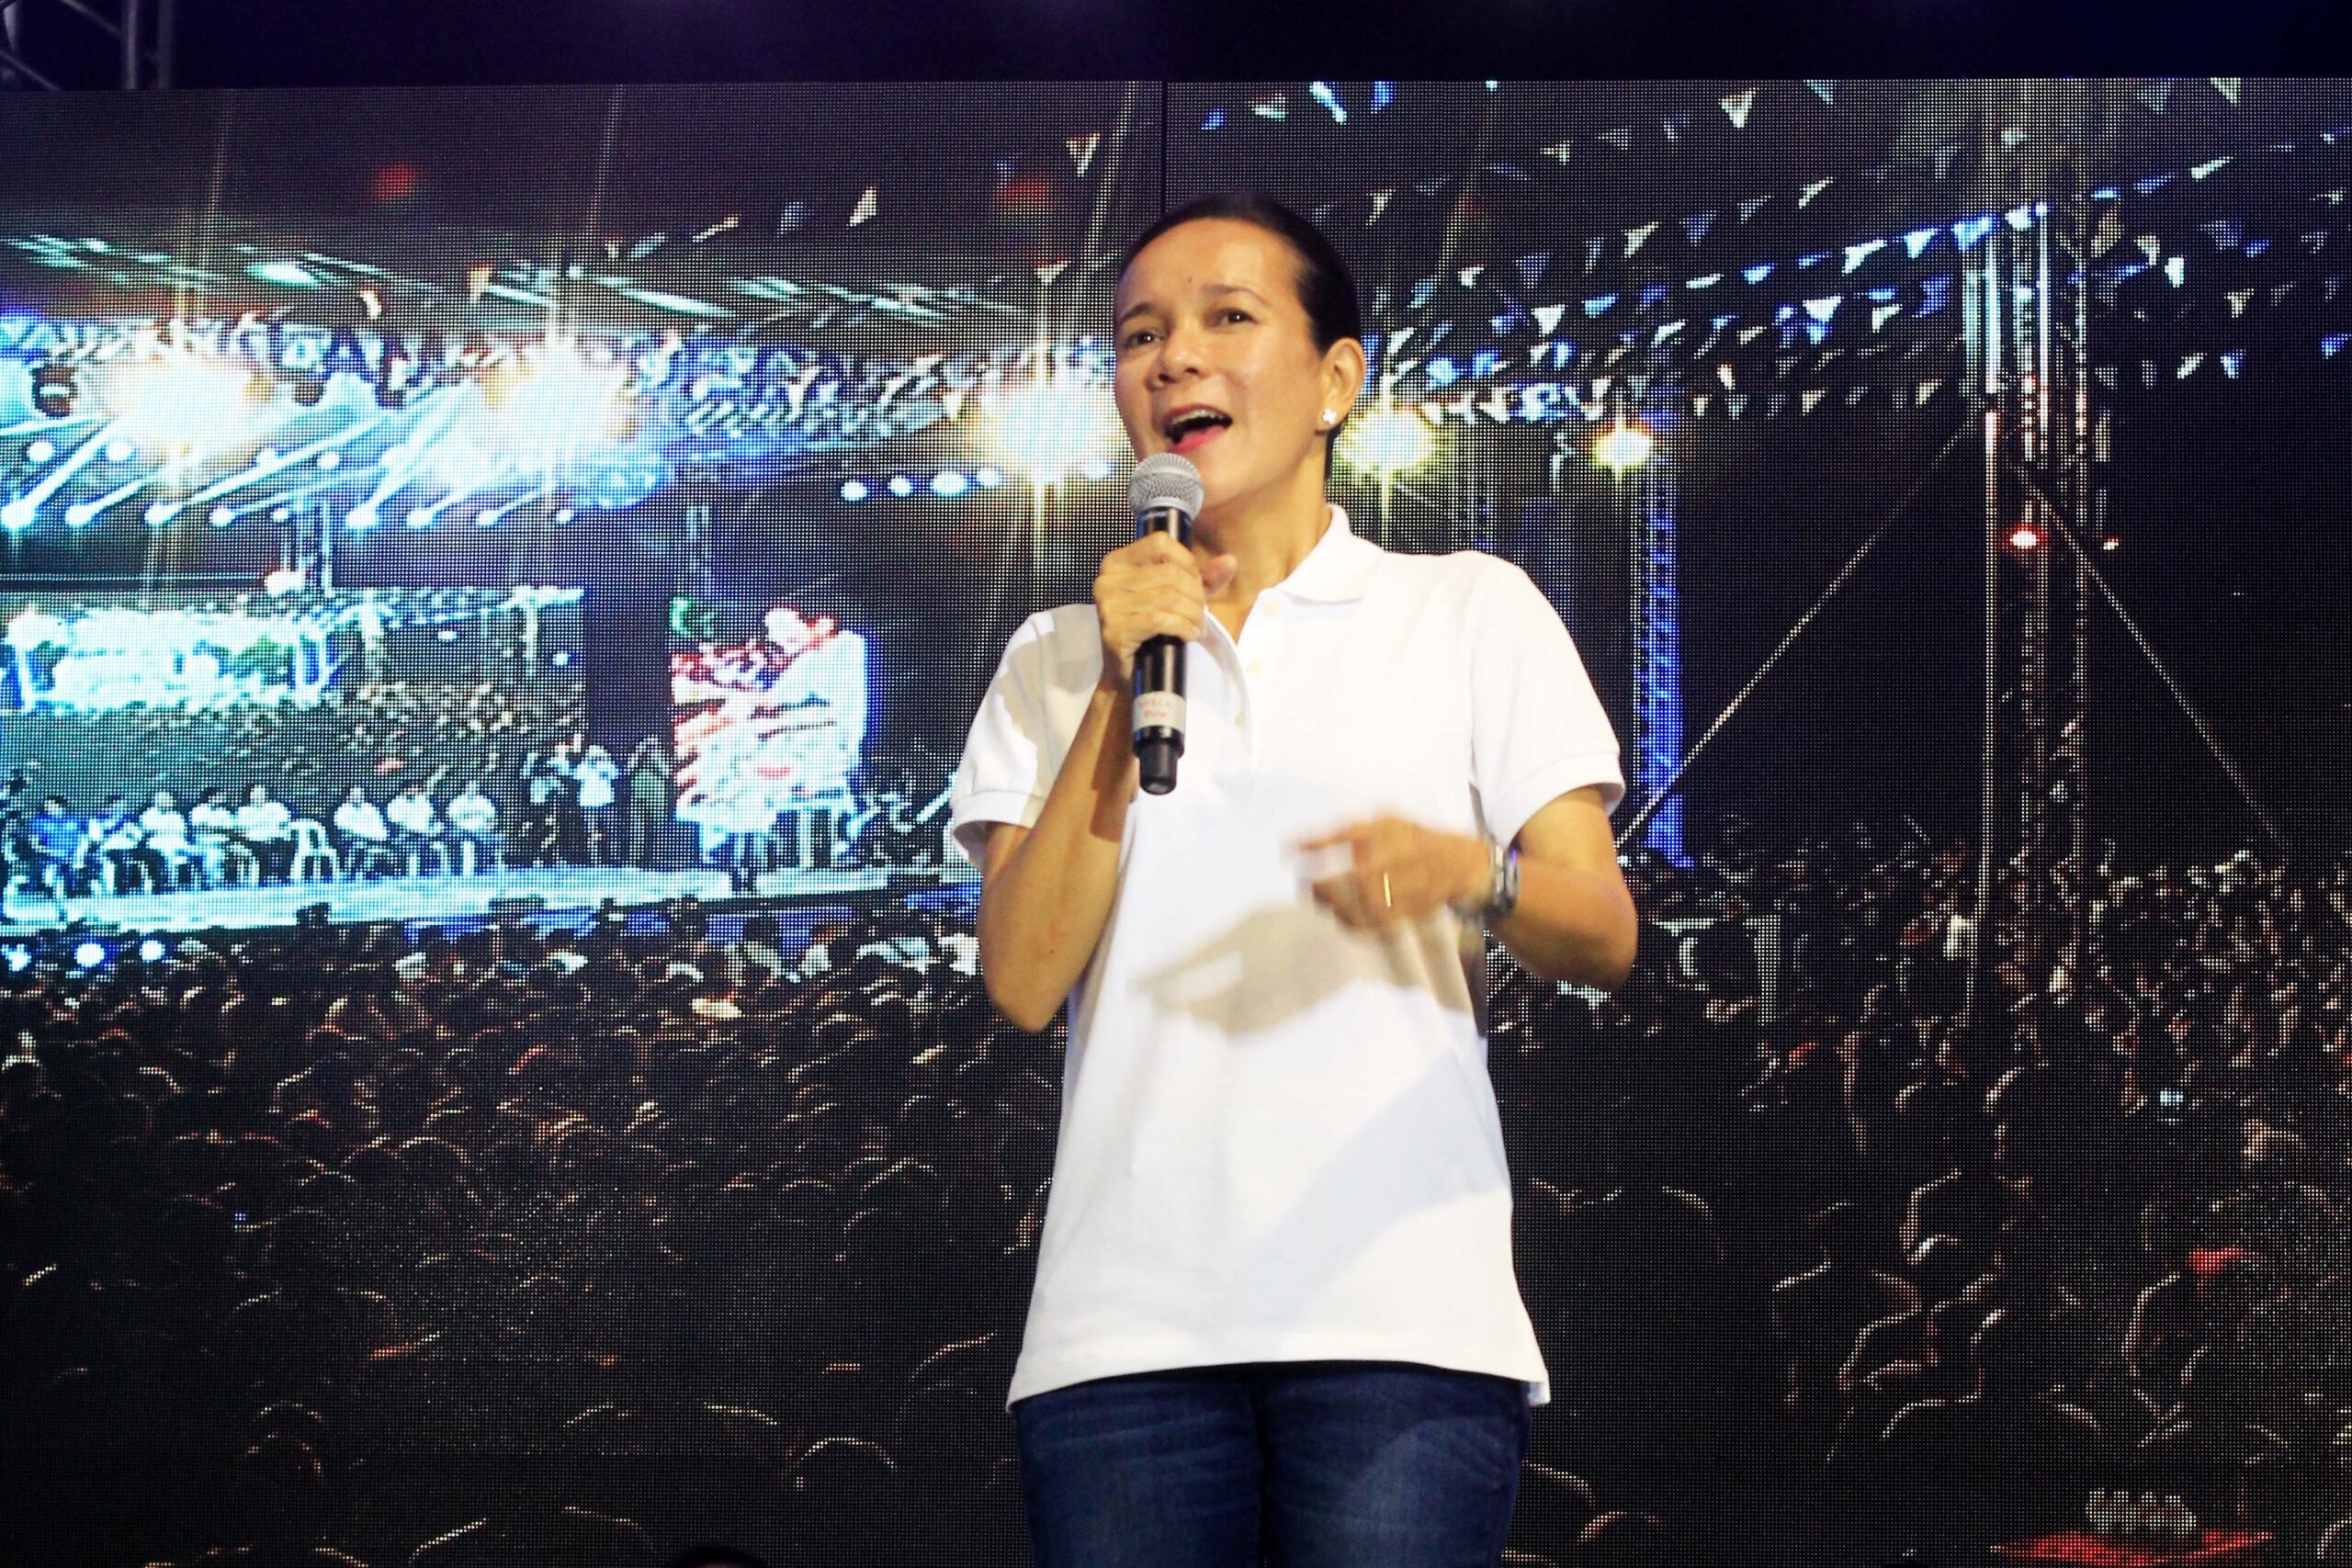 LP bet in Cagayan de Oro endorses Grace Poe